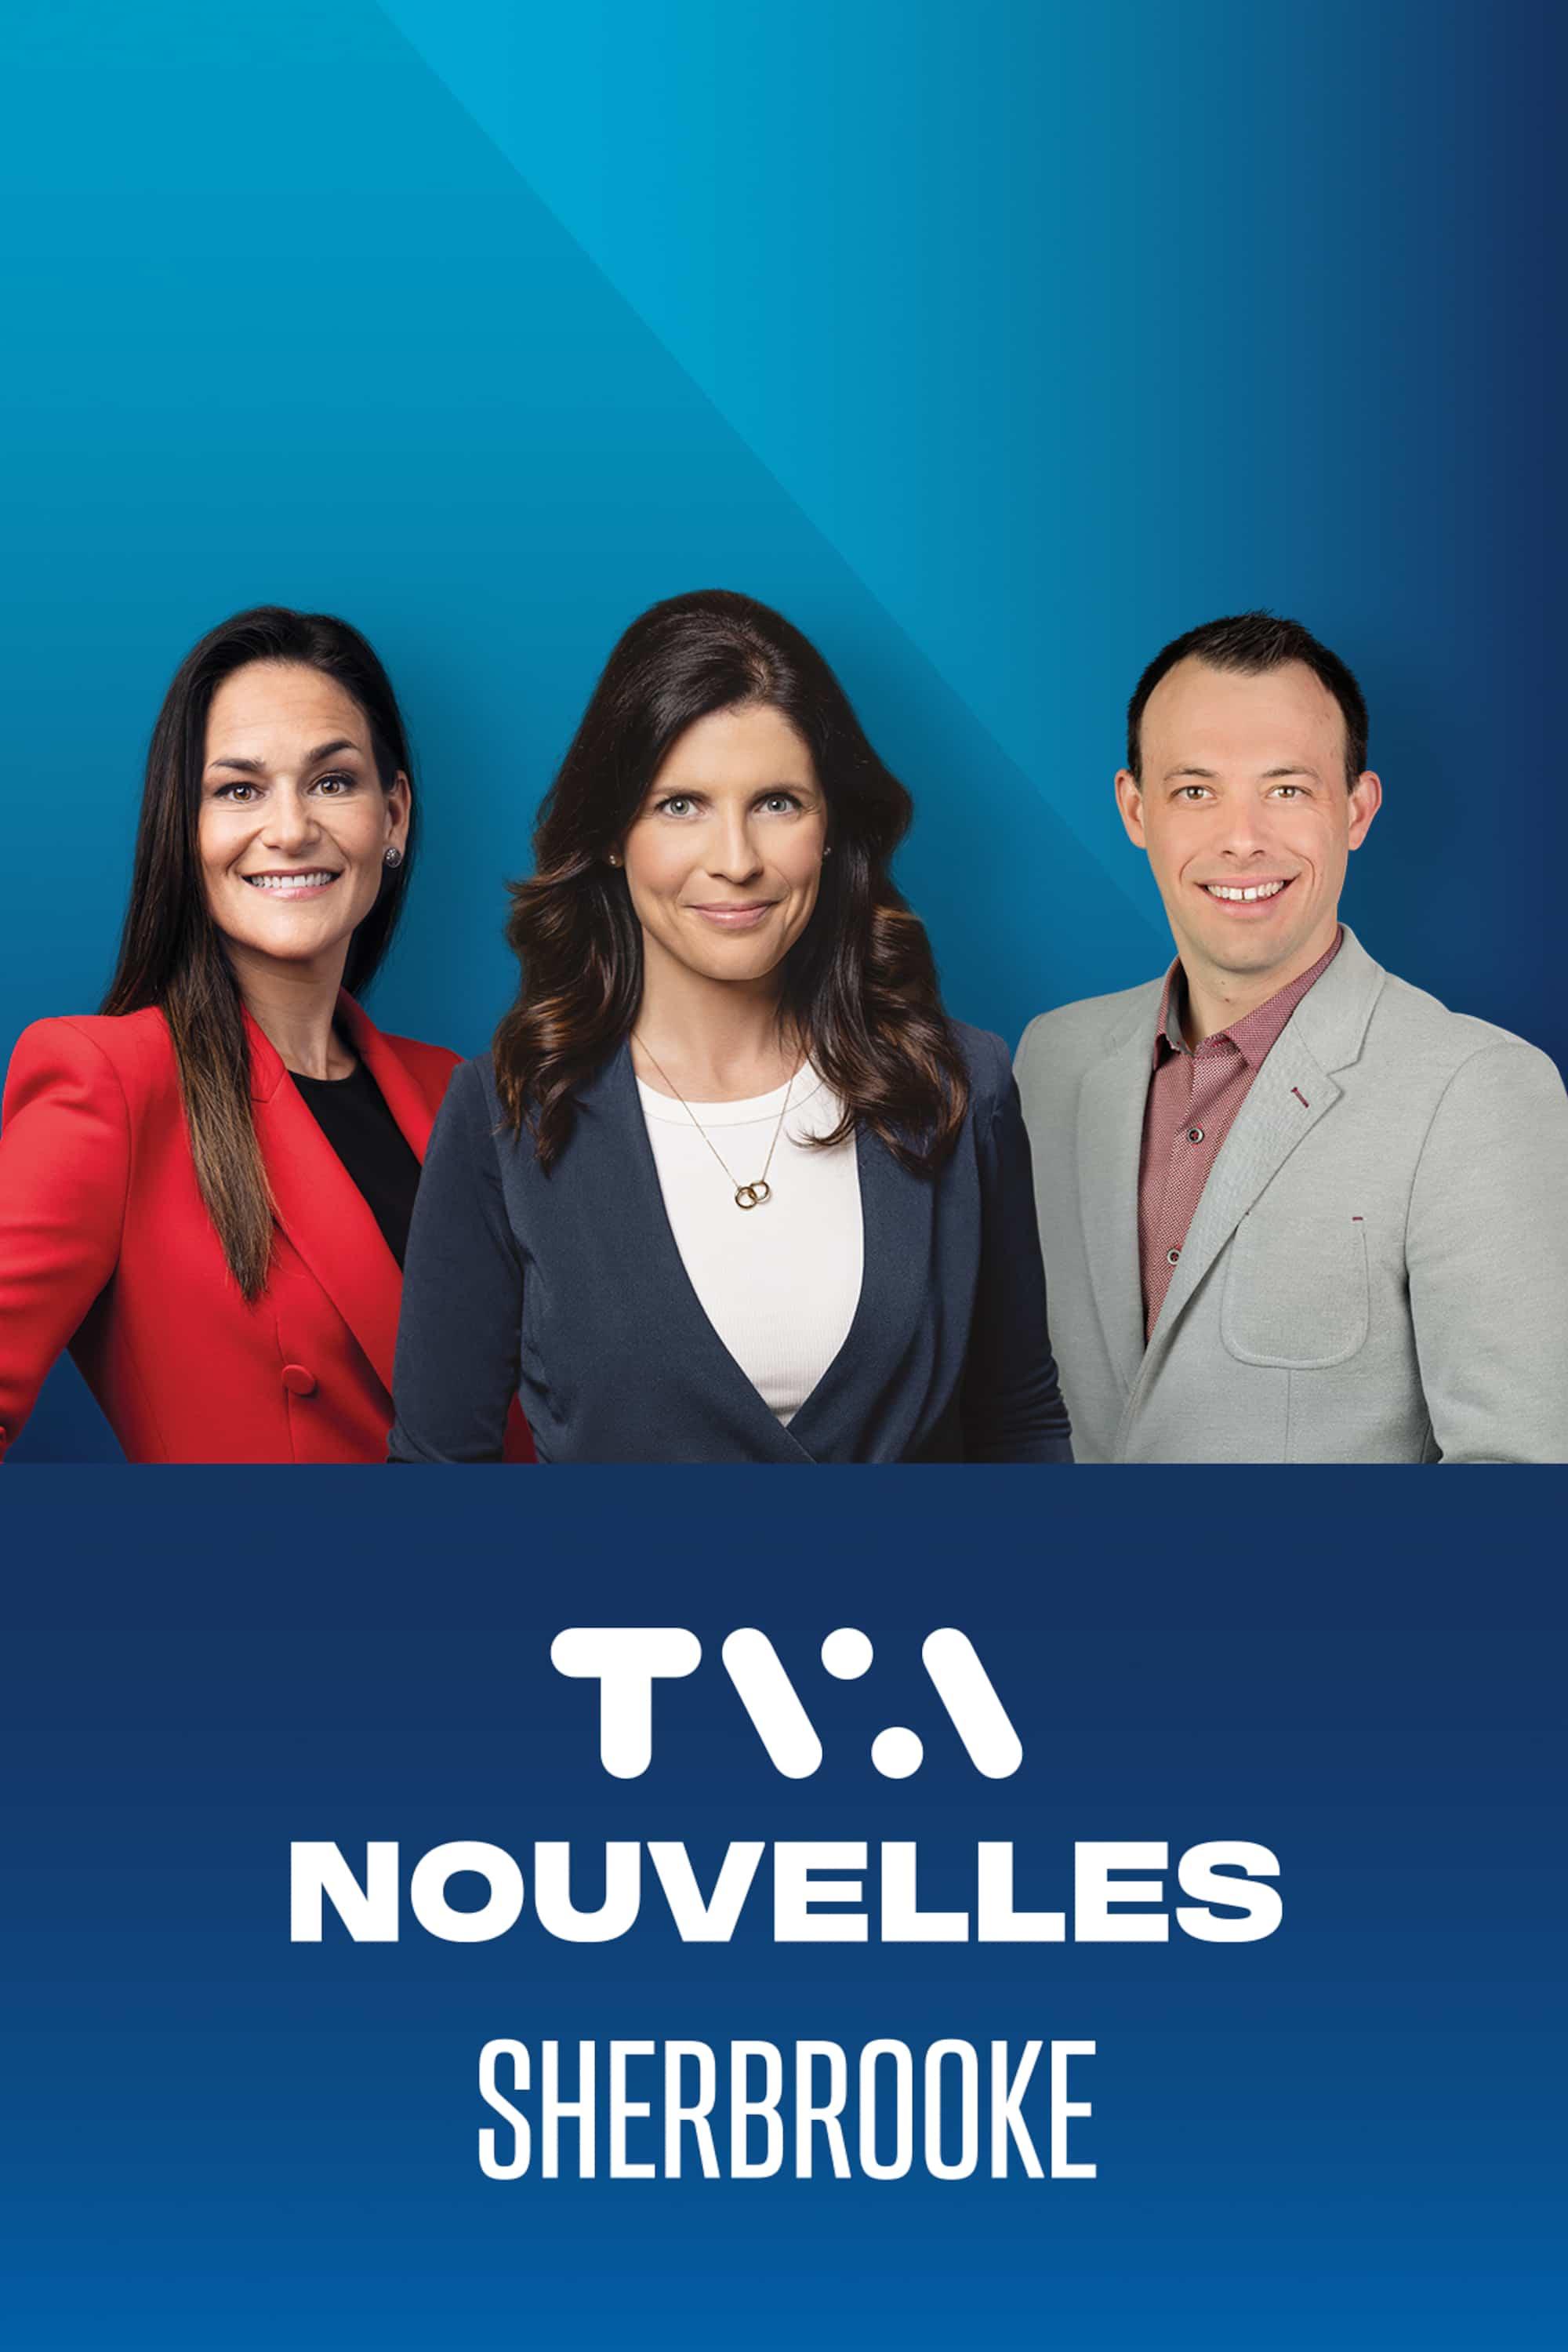 Le TVA Nouvelles Sherbrooke